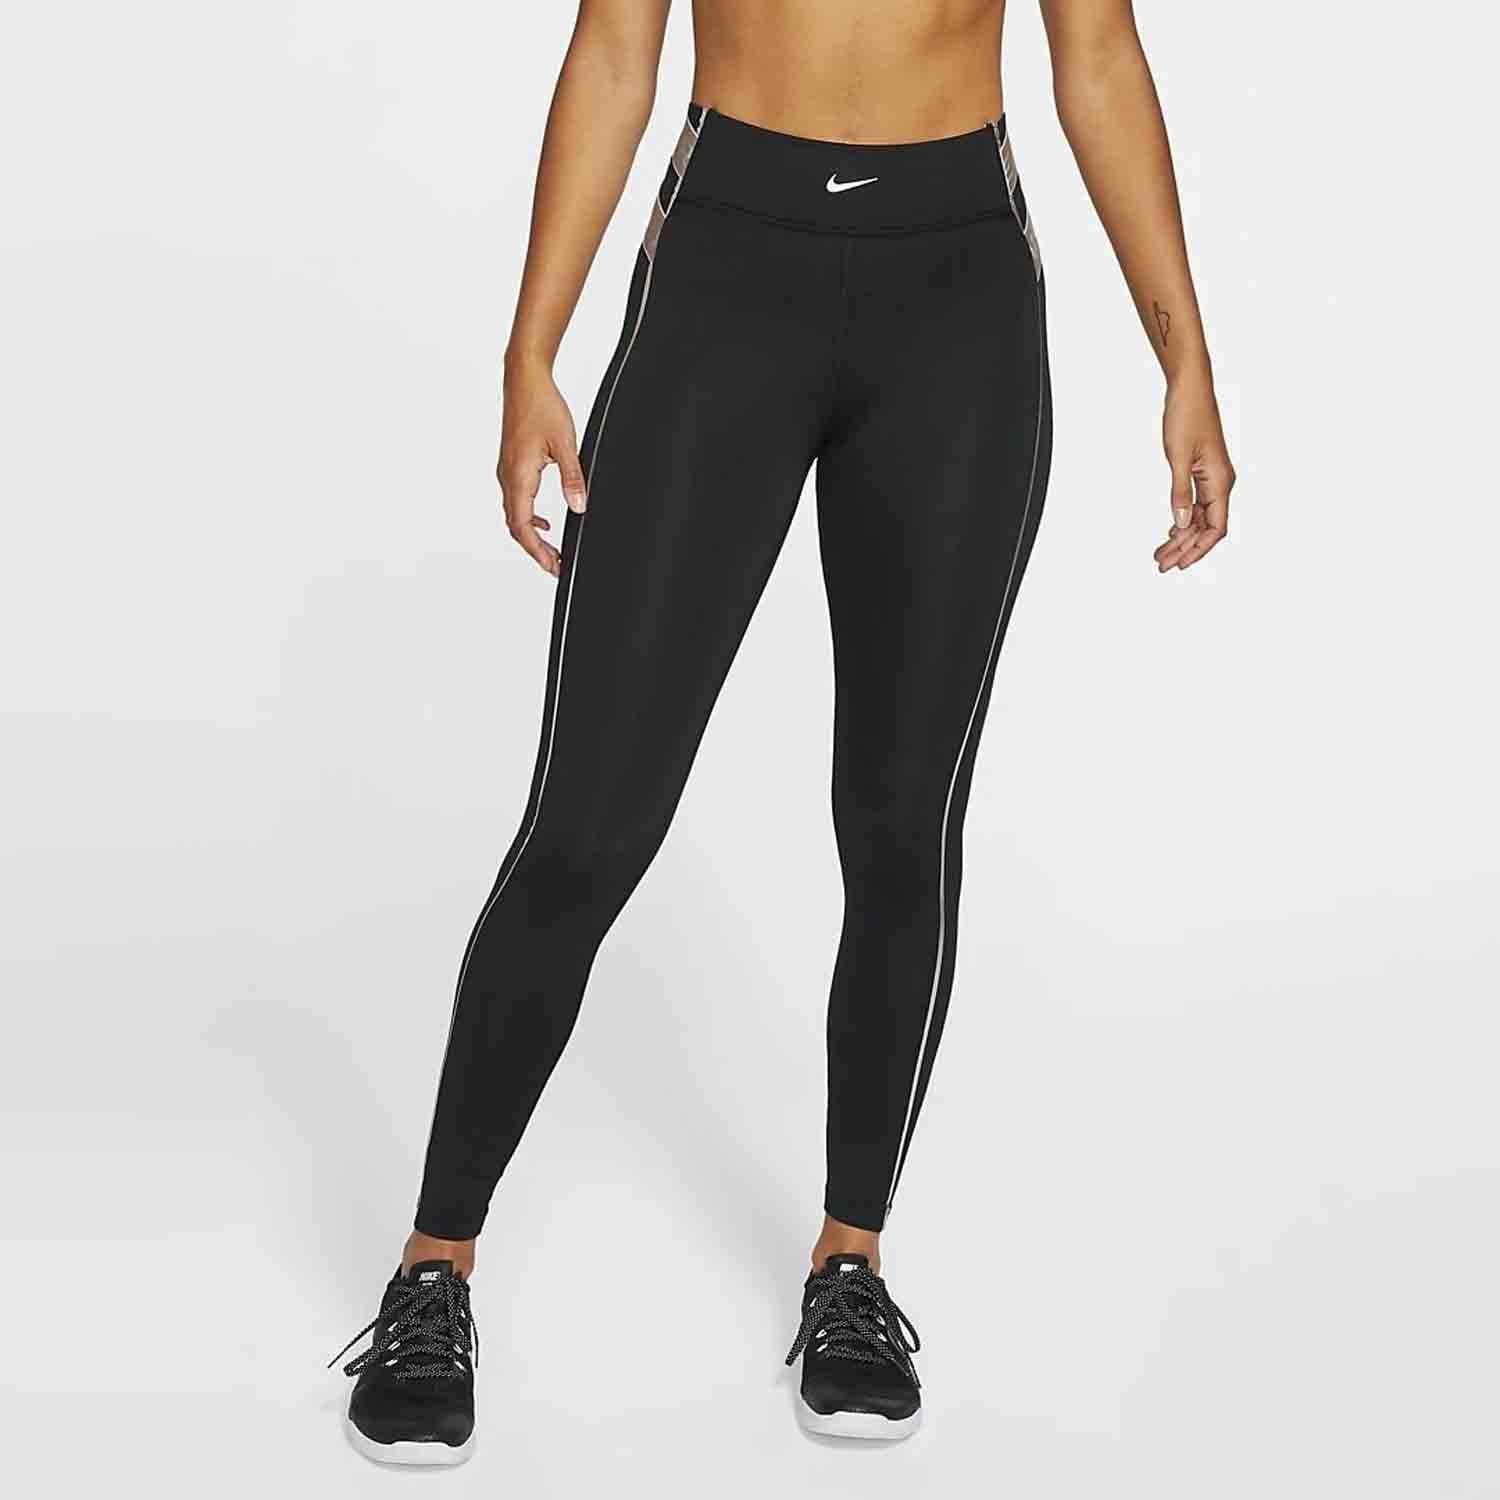 Nike Pro Women's Mid-Rise Full-Length Graphic Training Leggings. Nike HR